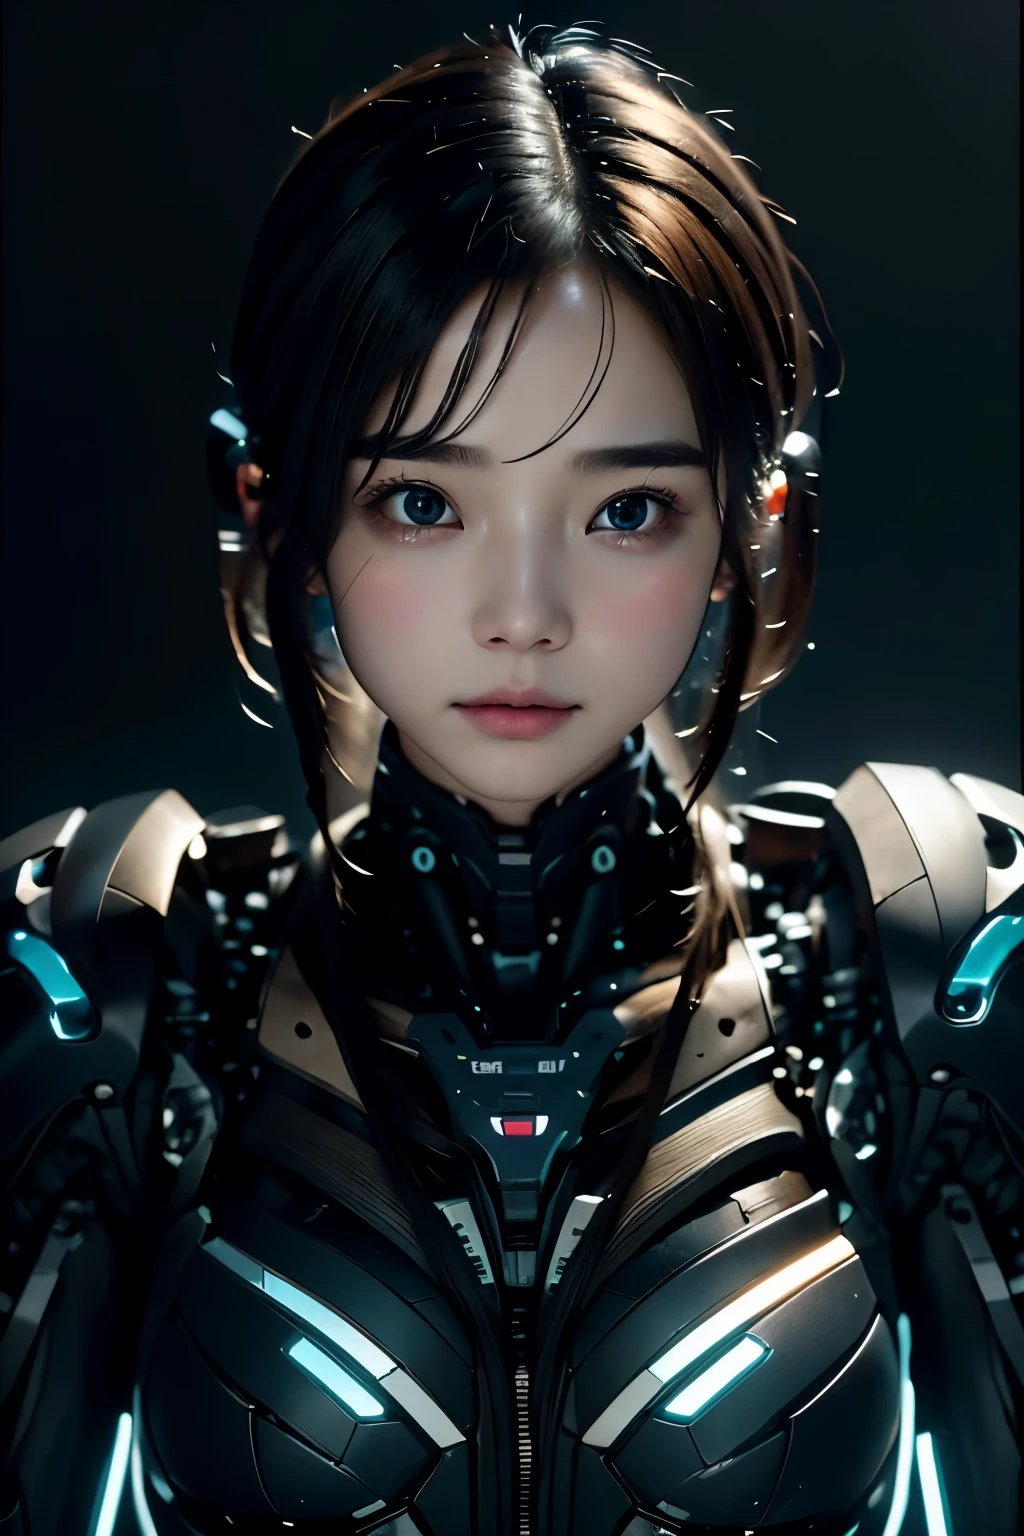 Intelligent Bionic Robot, Mädchen、Cyborg Robot Parts、kabel elektrische leitungmicrochipright studio、(hyperphotorealism、hohe Detailgenauigkeit、komplizierte DetailseineBeleuchtung, Rendering von Octane、Porträt), neonblaue Lichter, Unreal Engine 5 Renderechnischer Public Enemy-Stil、8K、Top Qualität、Meisterwerk、niedriger ISO、Weißabgleich、High-Key-Beleuchtung、Erzeugt ein weiches und anmutiges Gefühl mit geringer Tiefenschärfe,Eine hohe Auflösung,muskulös, cyberpunked,Schwarzes Haar, Mechanismen Körper, Mechanismen Beine, blaue Kugel im Körper